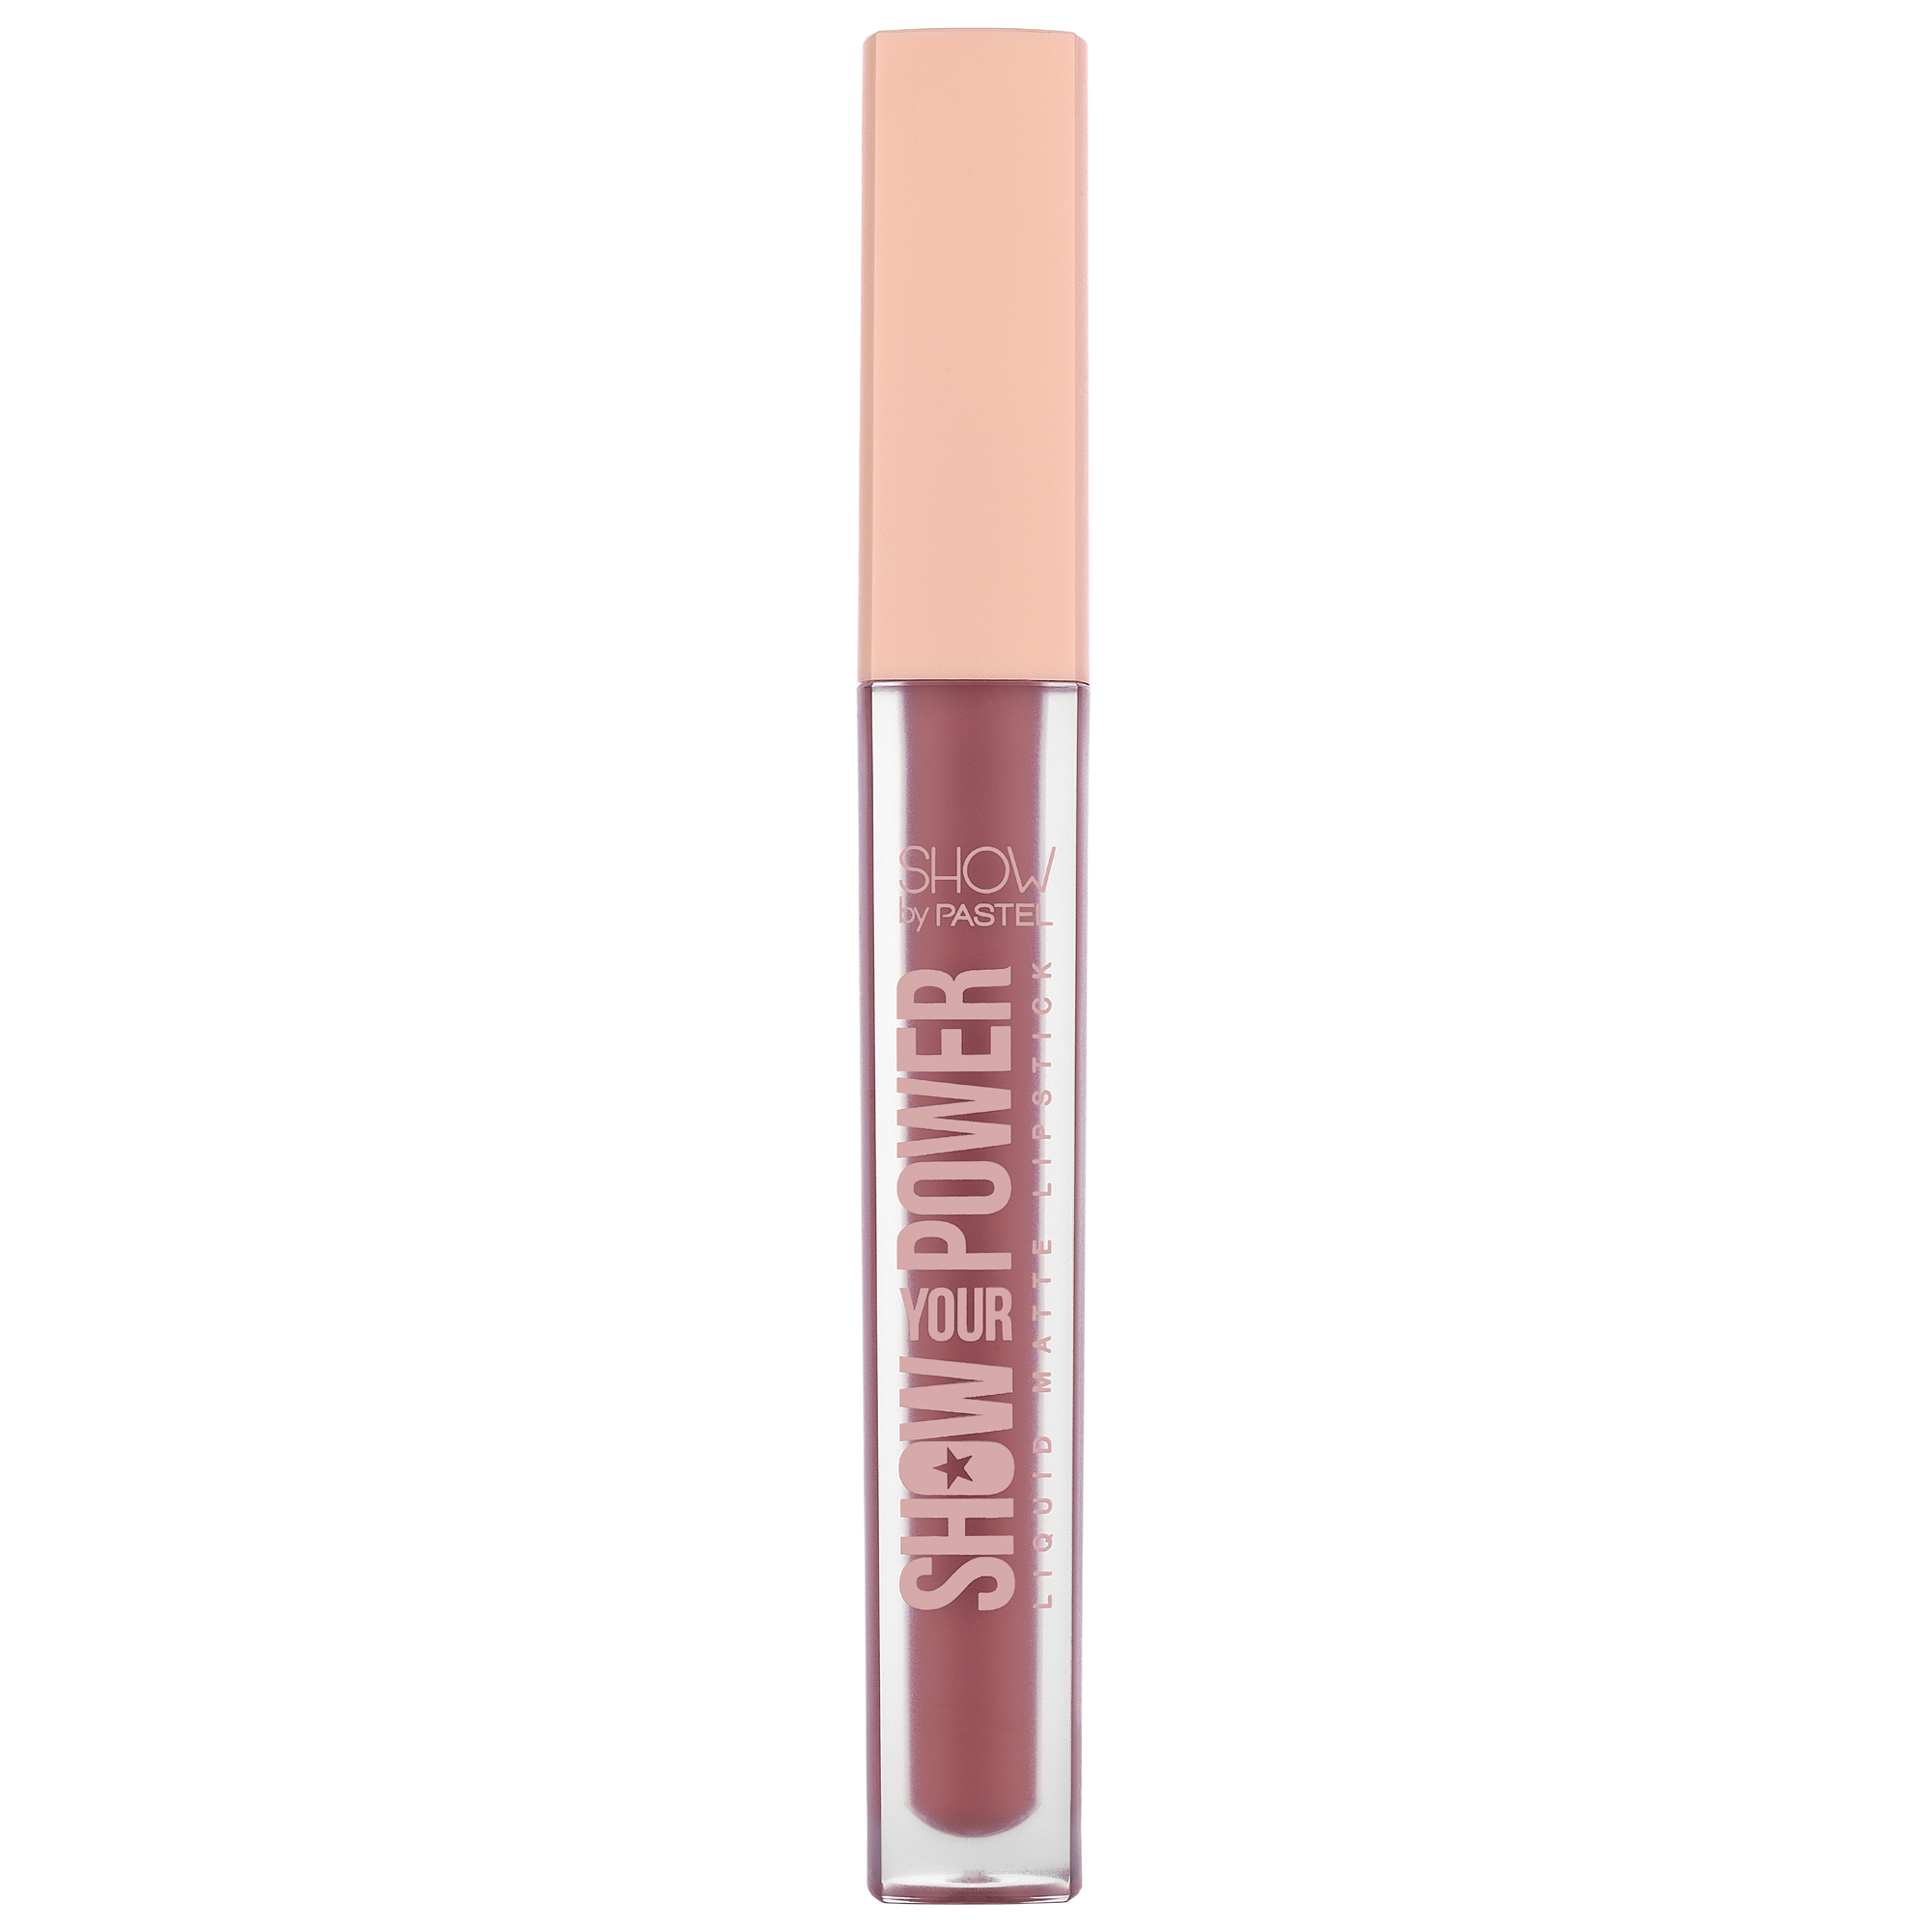 Pastel Show Your Power Liquid Matte Lipstick 601